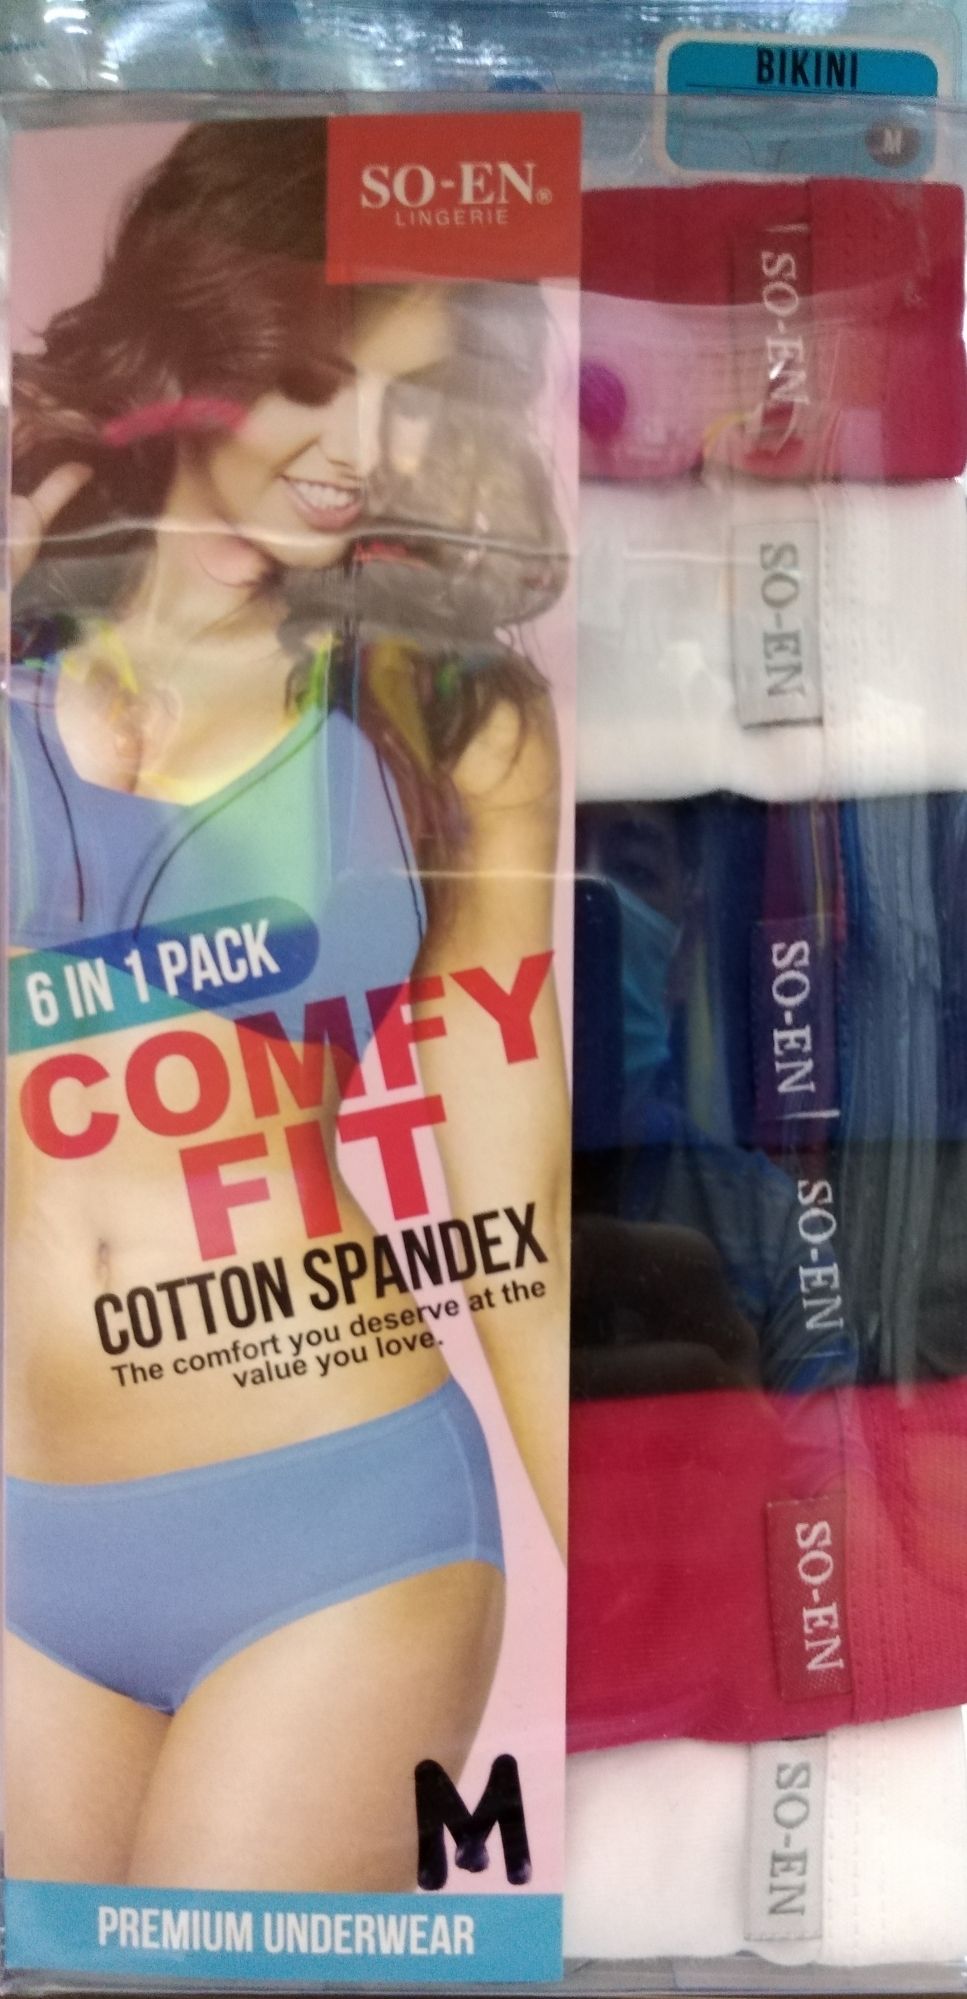 Comfyfit Cotton Spandex – SO-EN